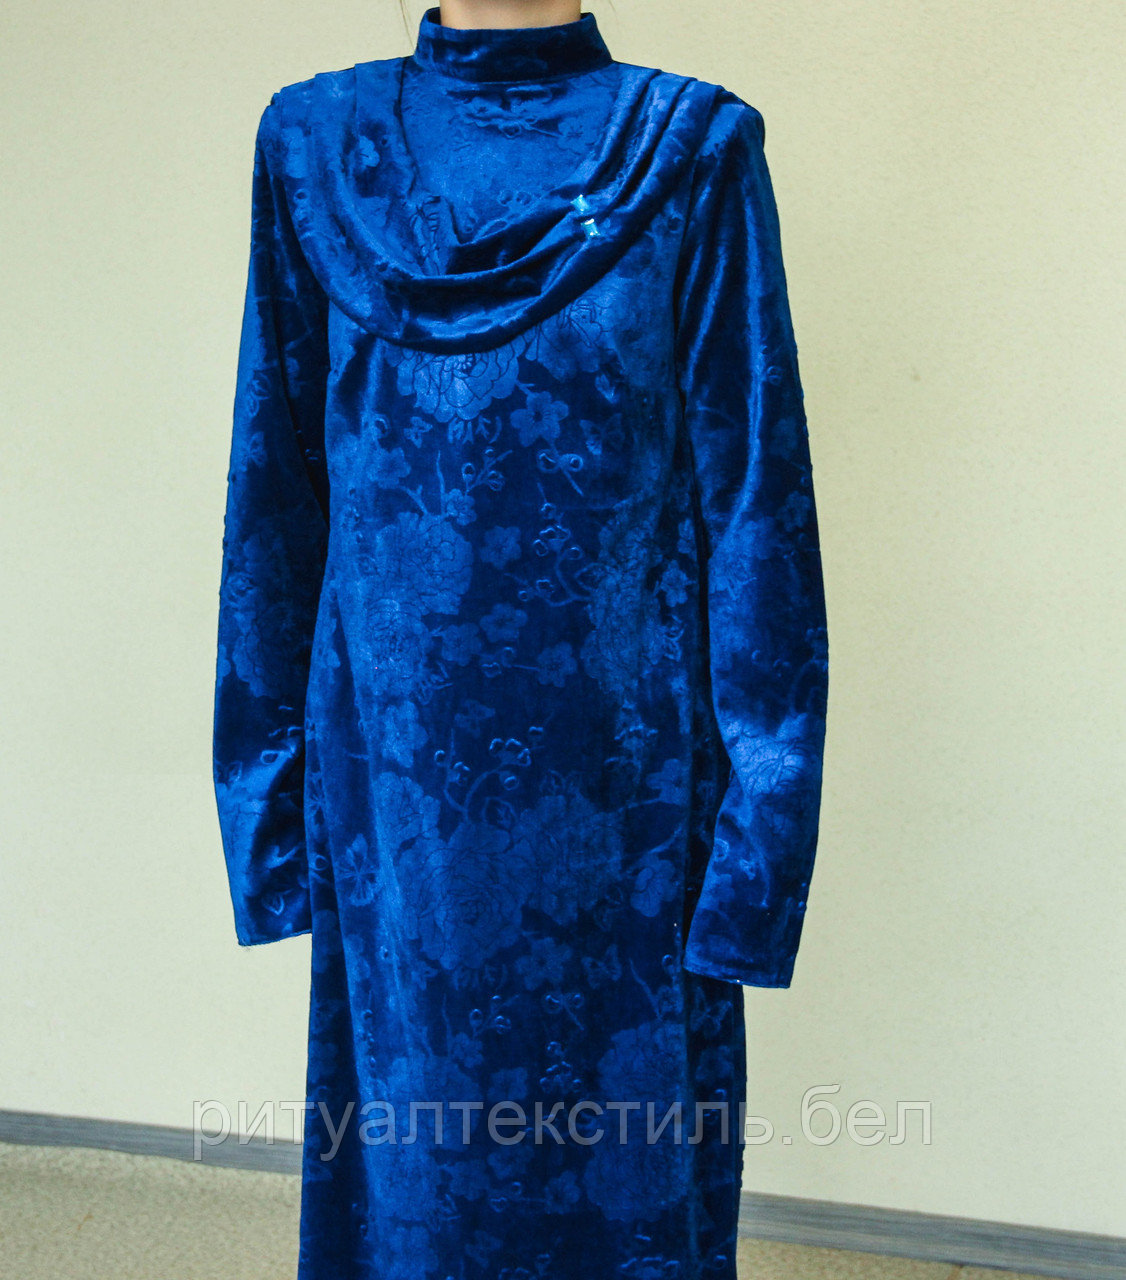 ОПТ. Платье бархатное женское ритуальное синее